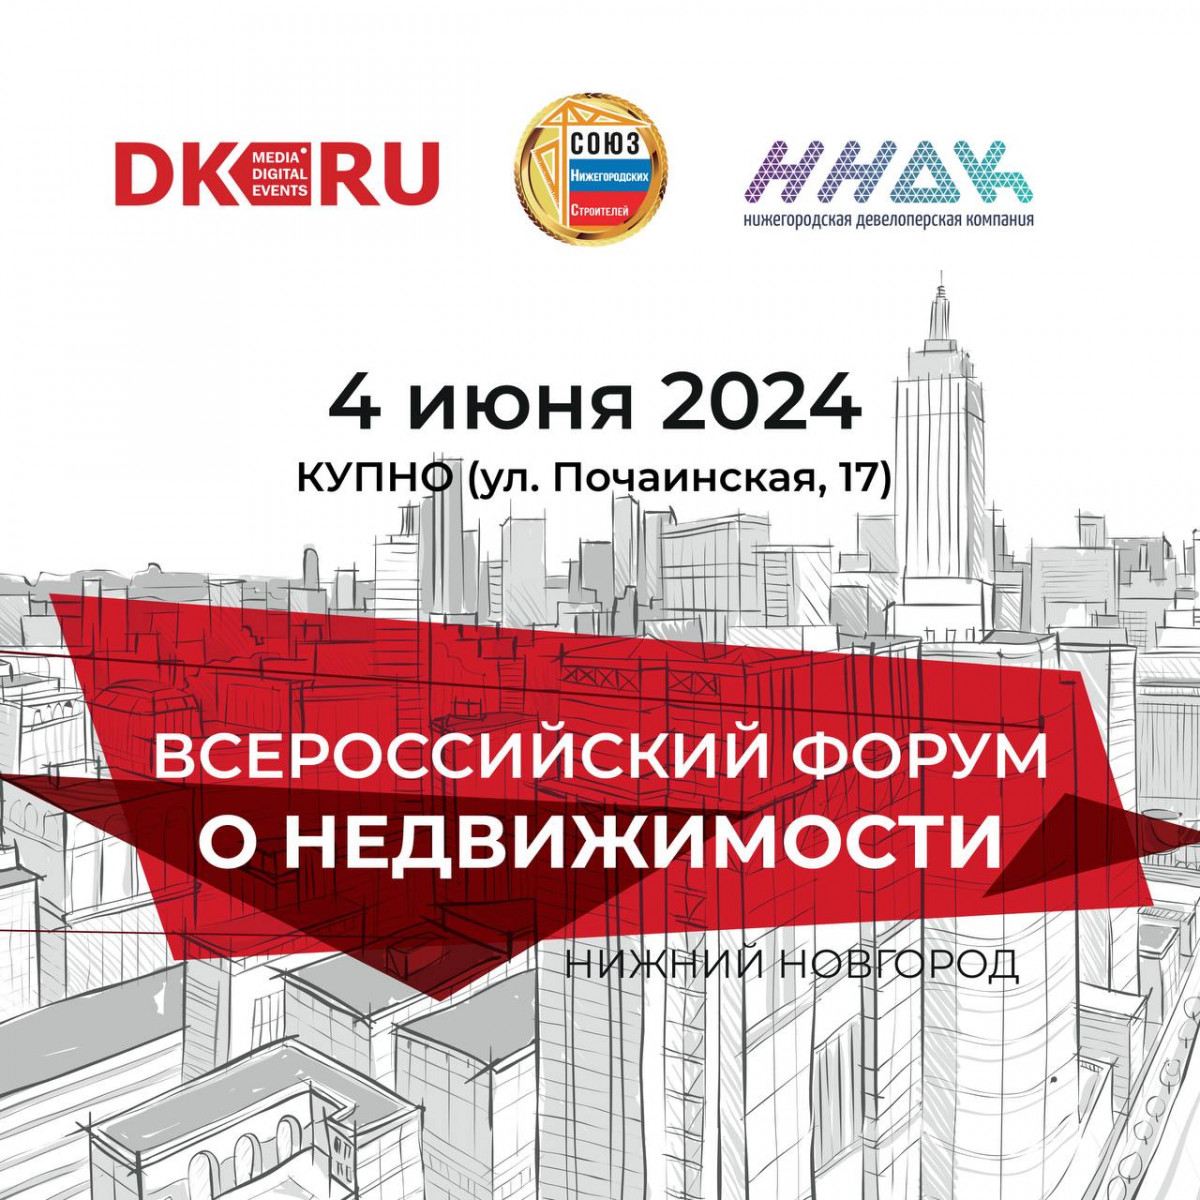 V Форум о недвижимости состоится в Нижнем Новгороде 4 июня